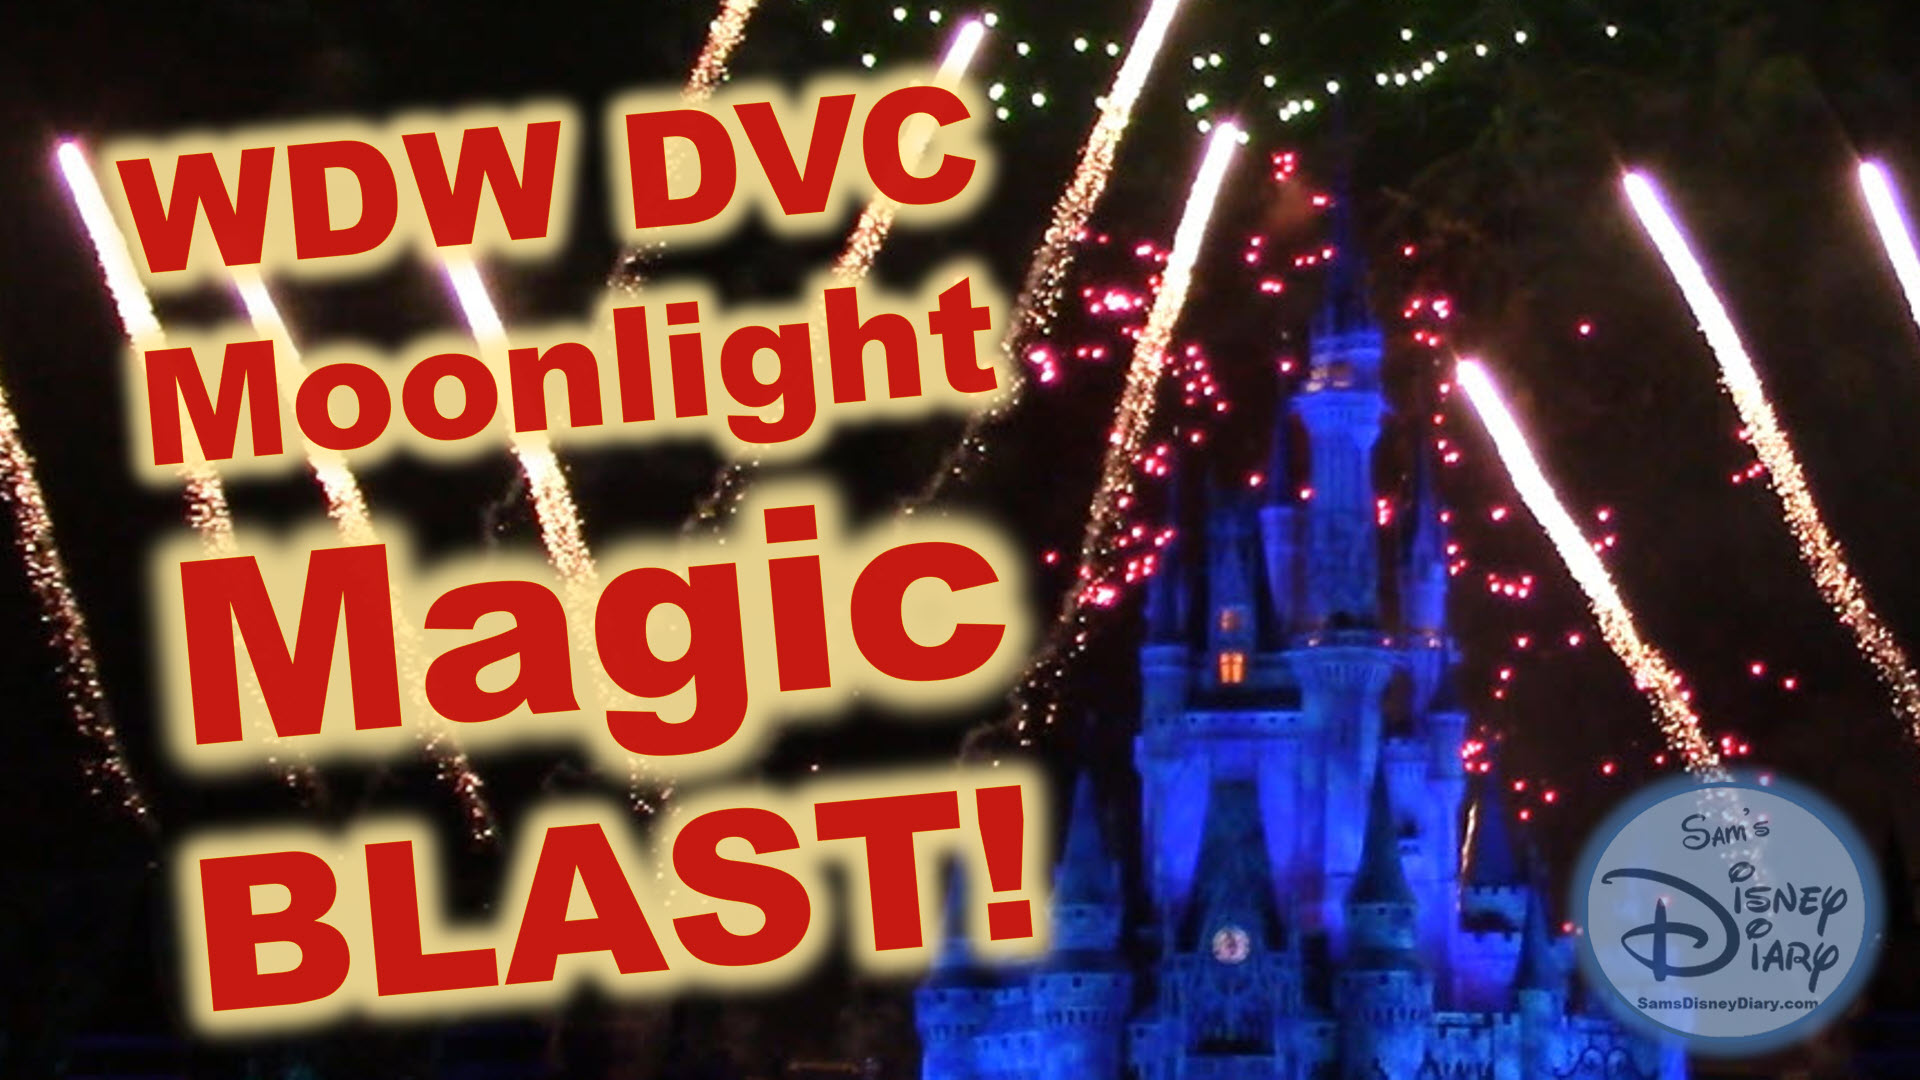 Walt Disney World Moonlight Magic Blast Magic Kingdom DVC Disney Vacation Club Fireworks